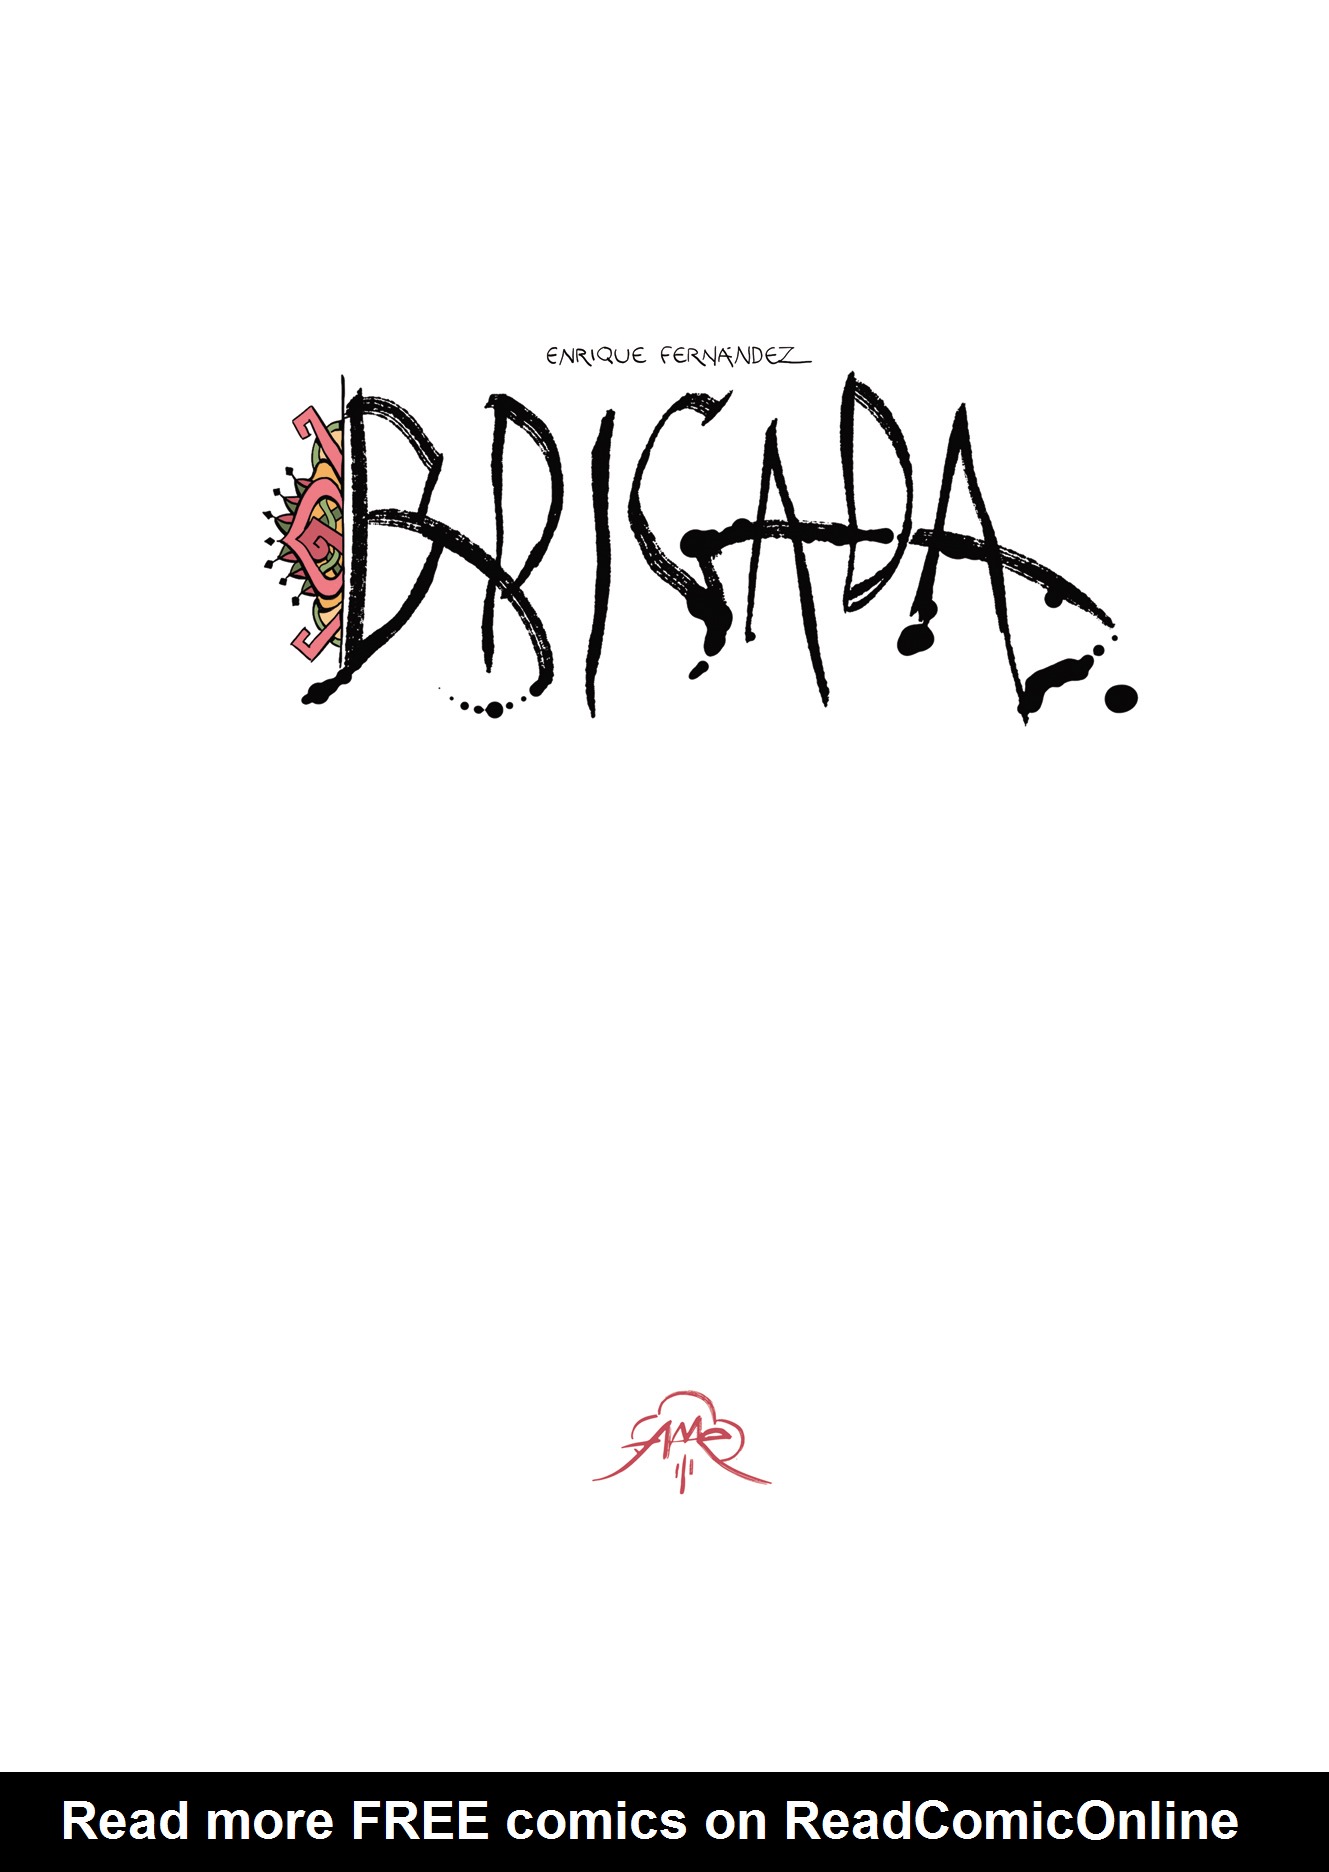 Read online Brigada comic -  Issue #1 - 4